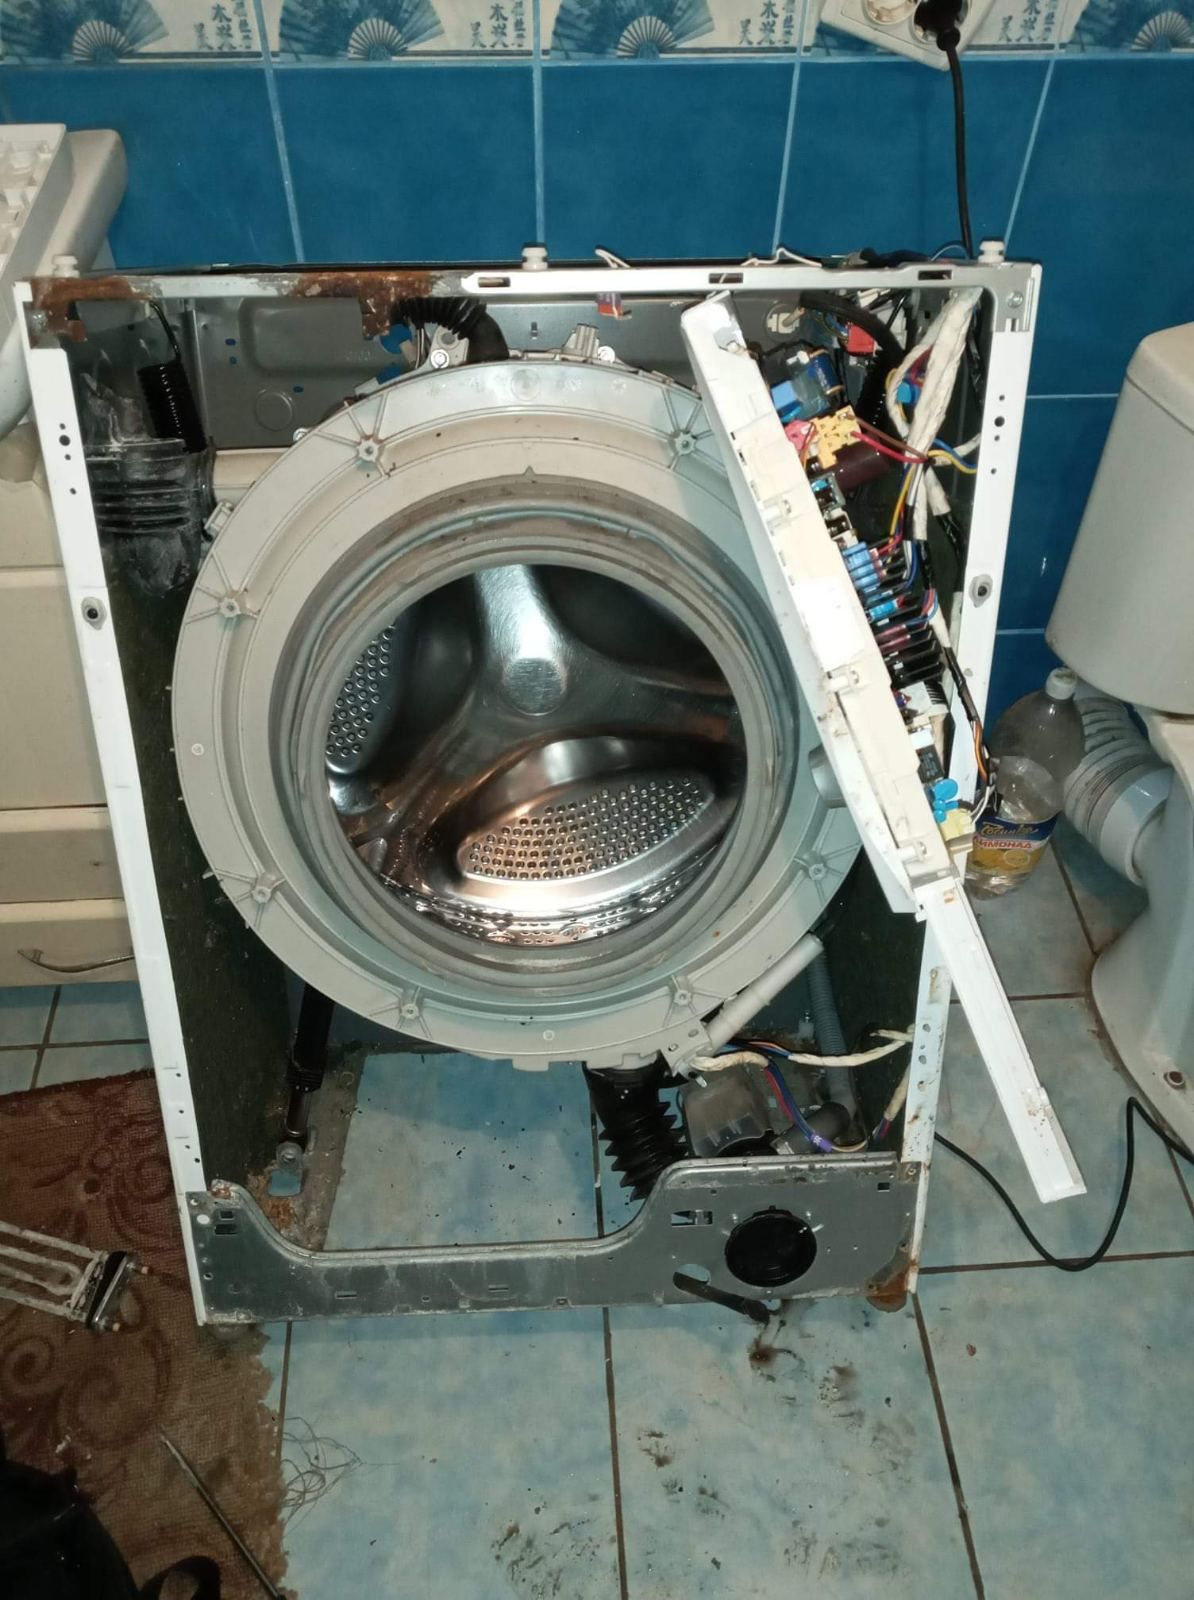 Ремонт пральних машин